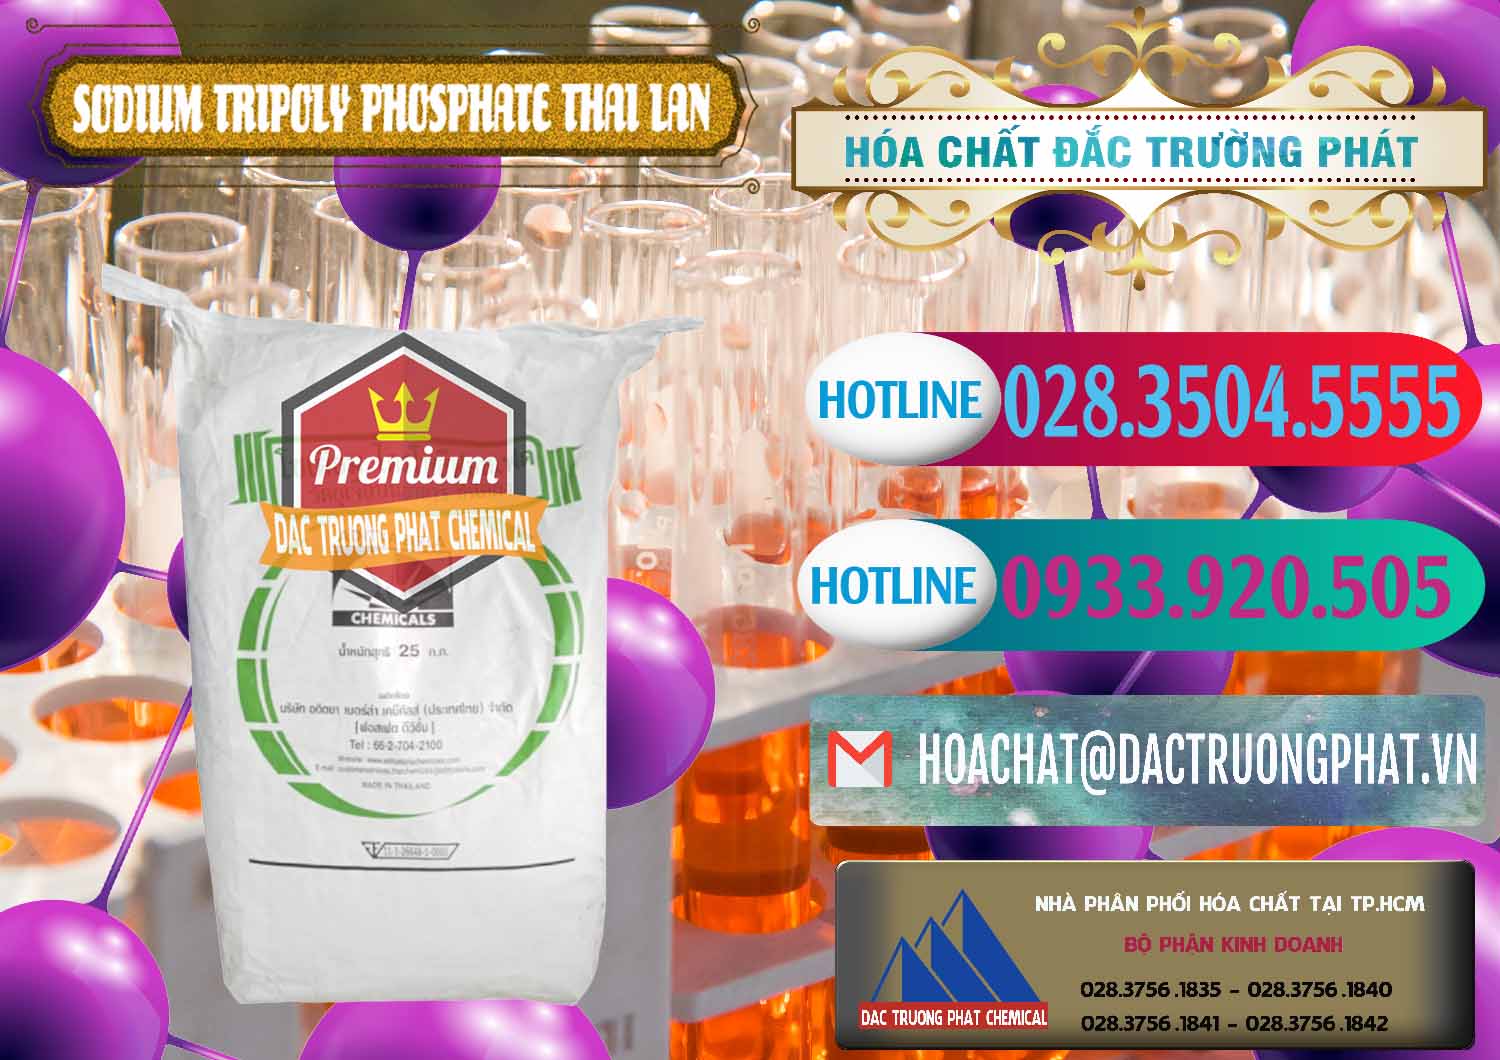 Đơn vị kinh doanh ( bán ) Sodium Tripoly Phosphate - STPP Aditya Birla Grasim Thái Lan Thailand - 0421 - Công ty nhập khẩu - phân phối hóa chất tại TP.HCM - truongphat.vn